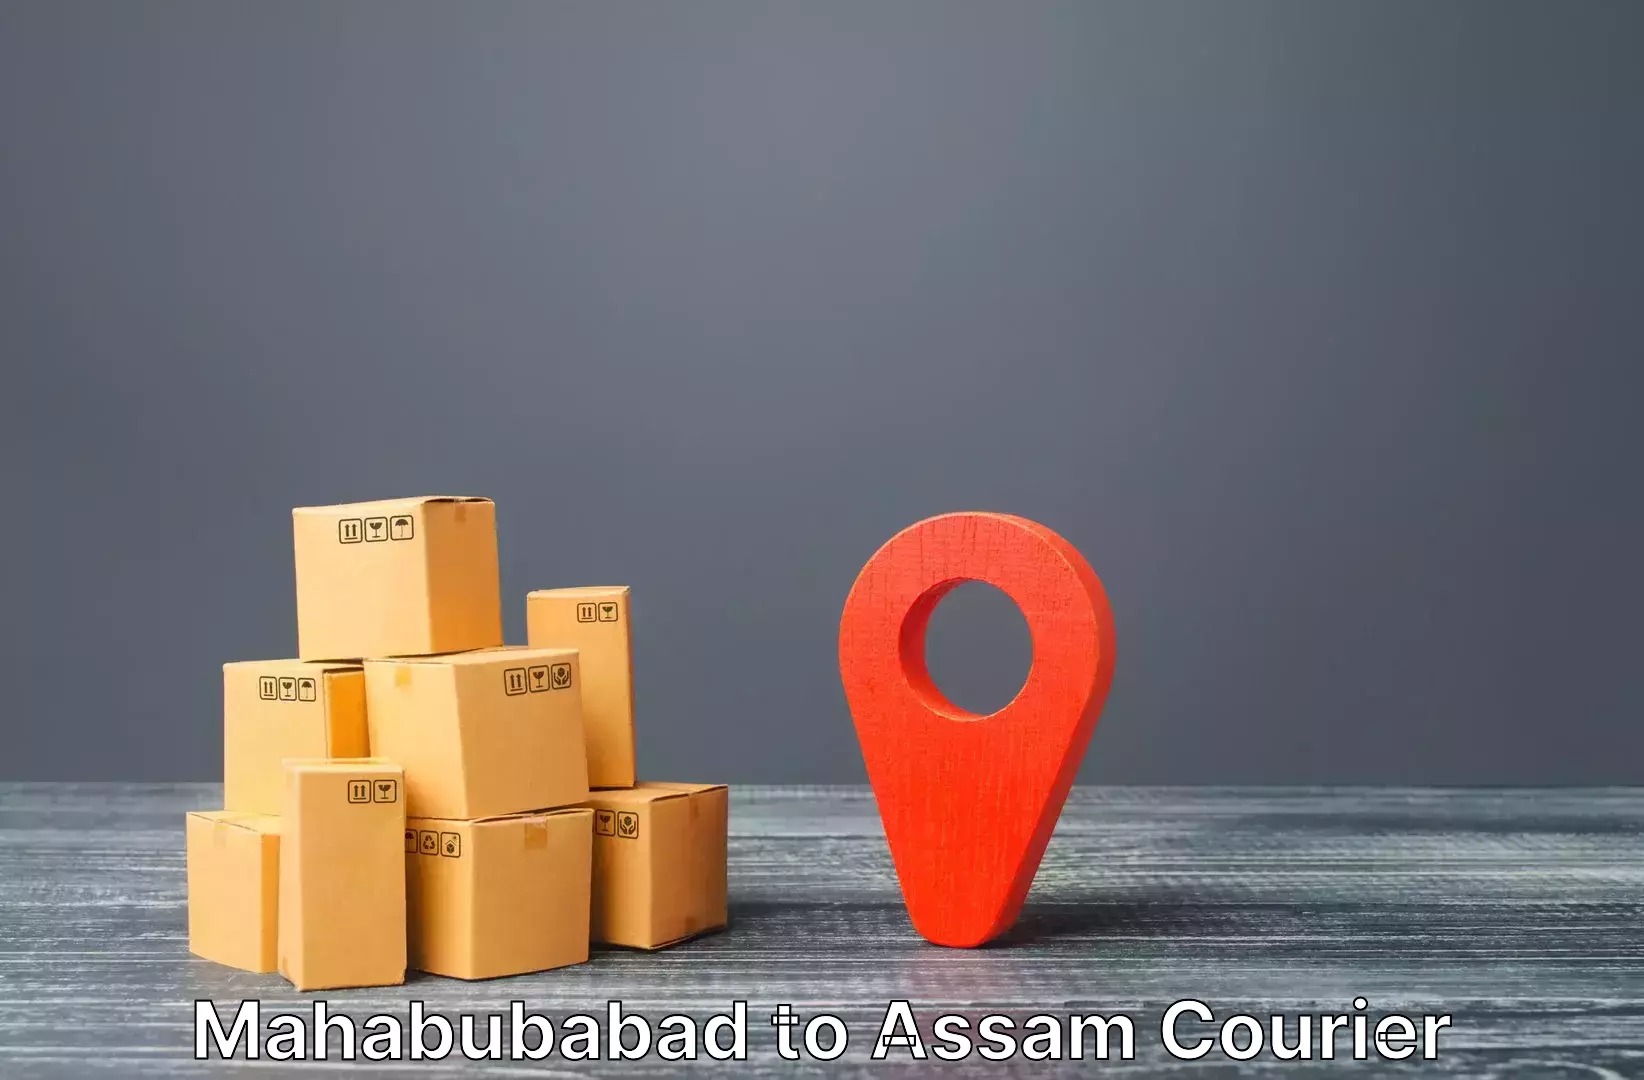 Baggage shipping experts Mahabubabad to Bamunimaidan